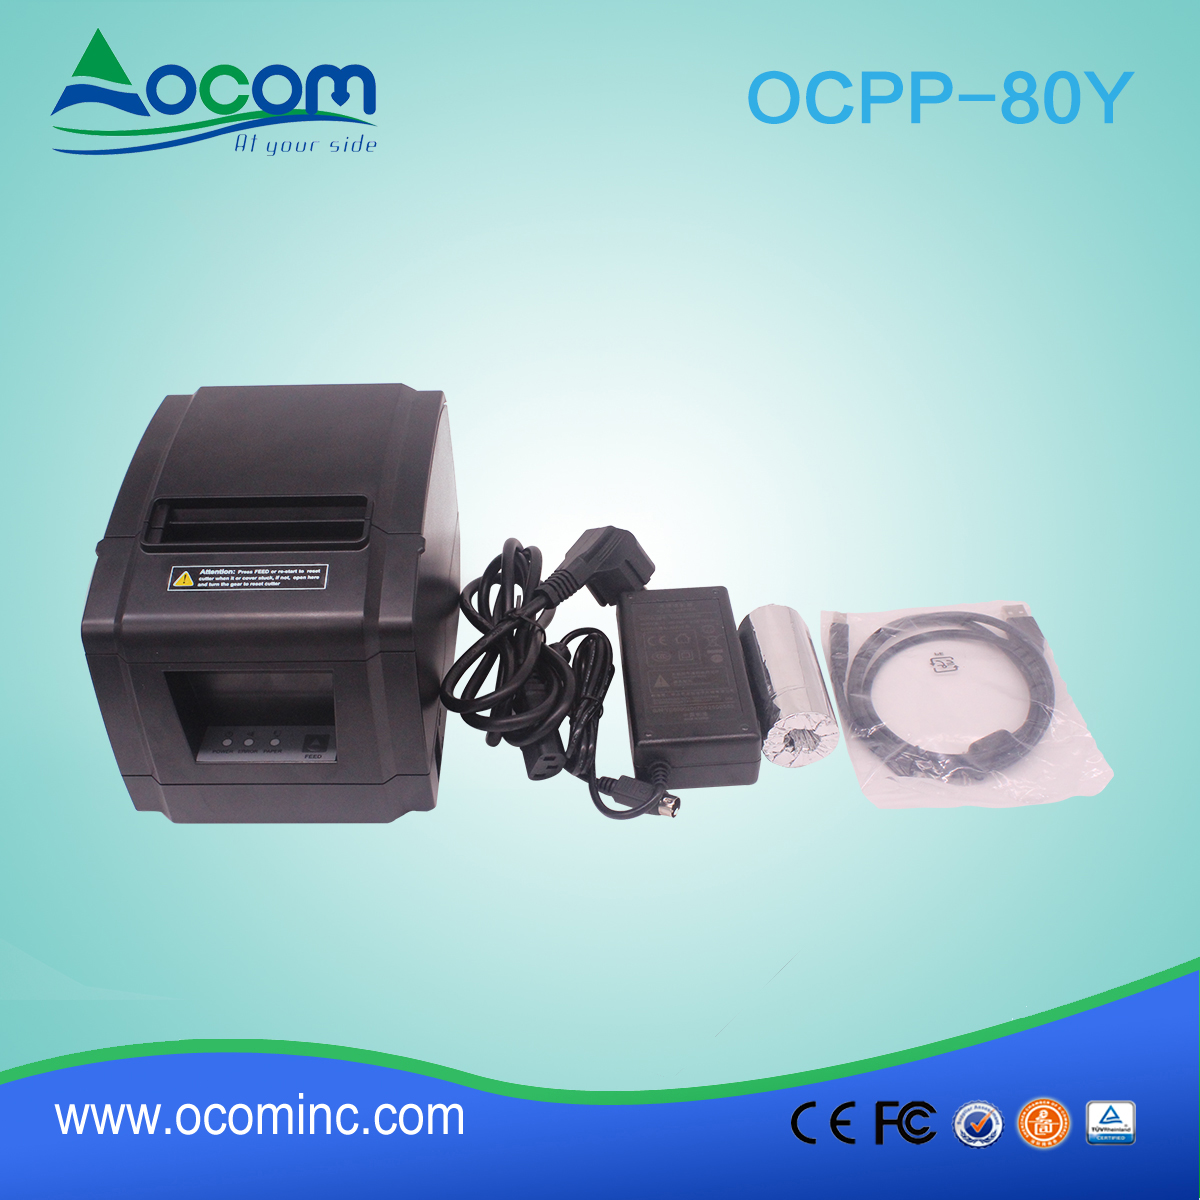 OCPP-80Y-χαμηλού κόστους 80 χιλιοστά θερμική εκτύπωση εκτύπωση εκτυπωτή ζεστό πώλησης